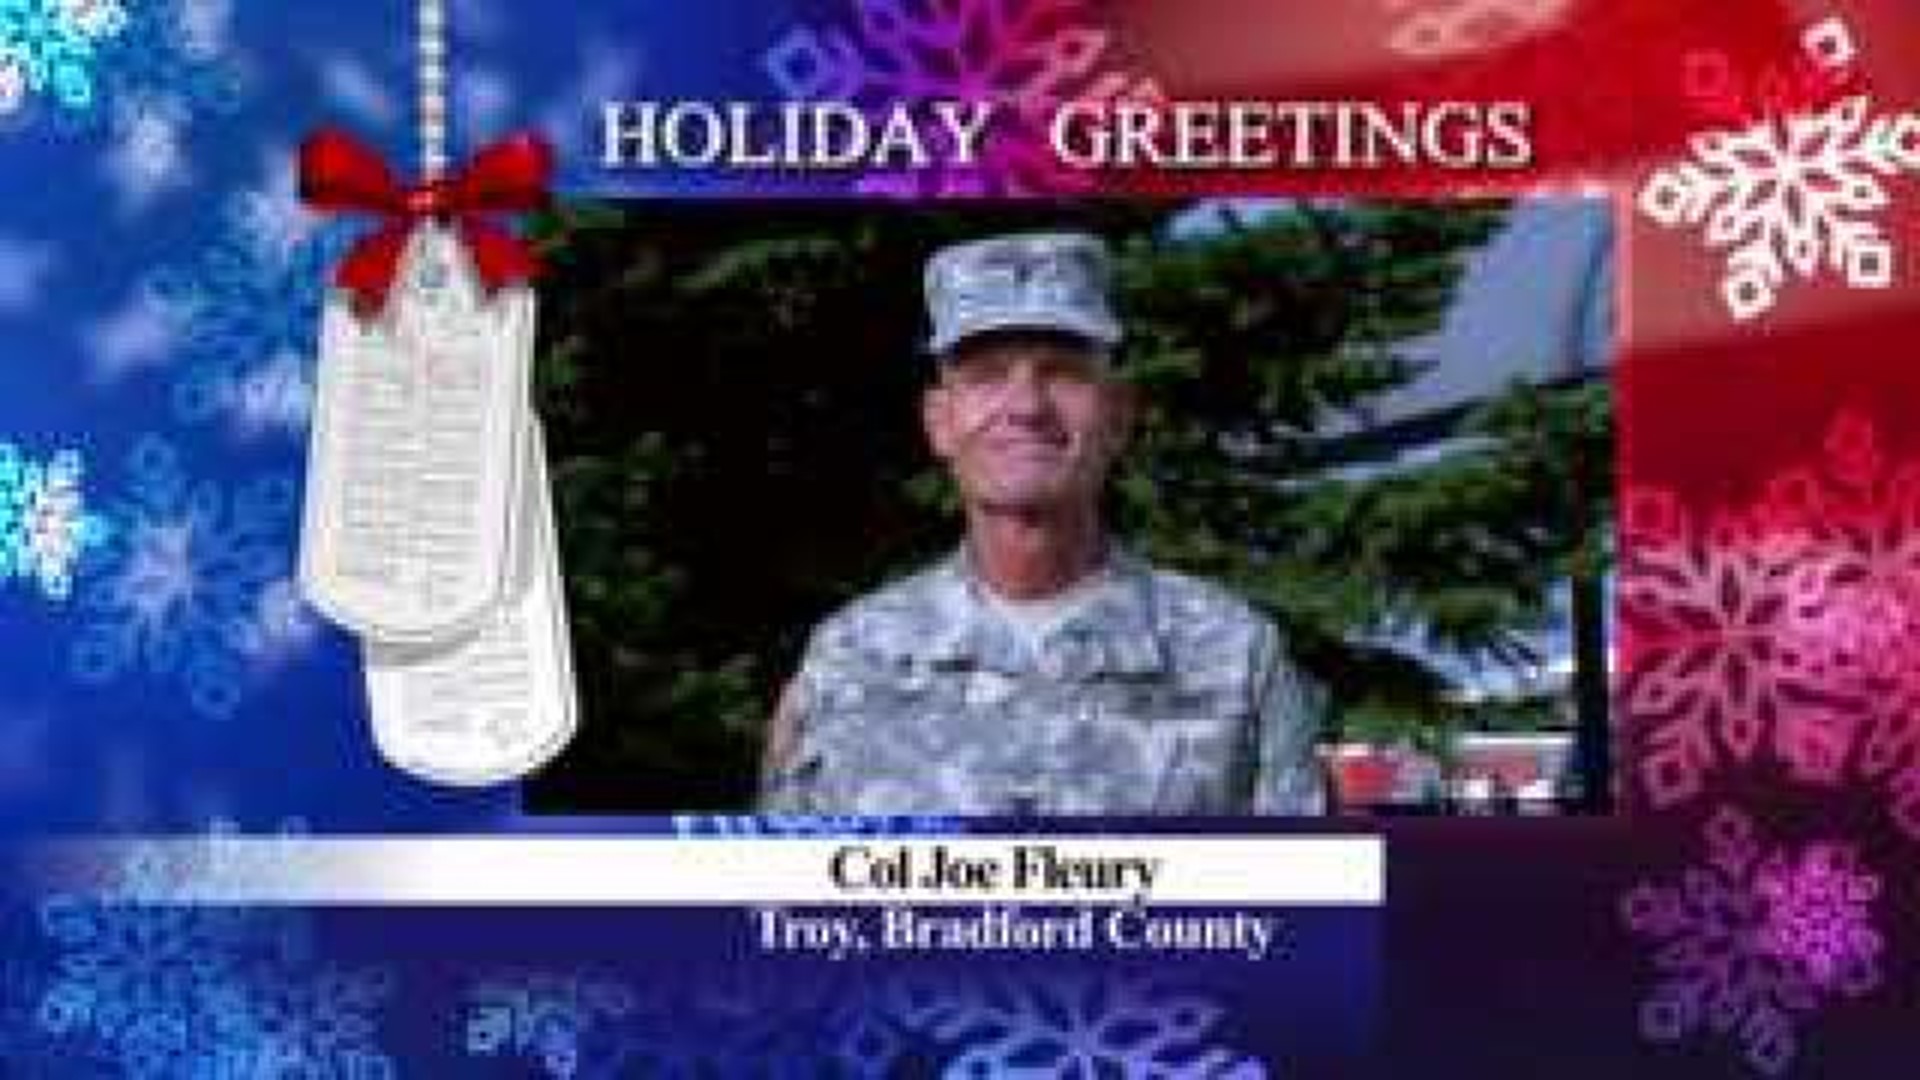 Military Greeting: COL Joe Fleury